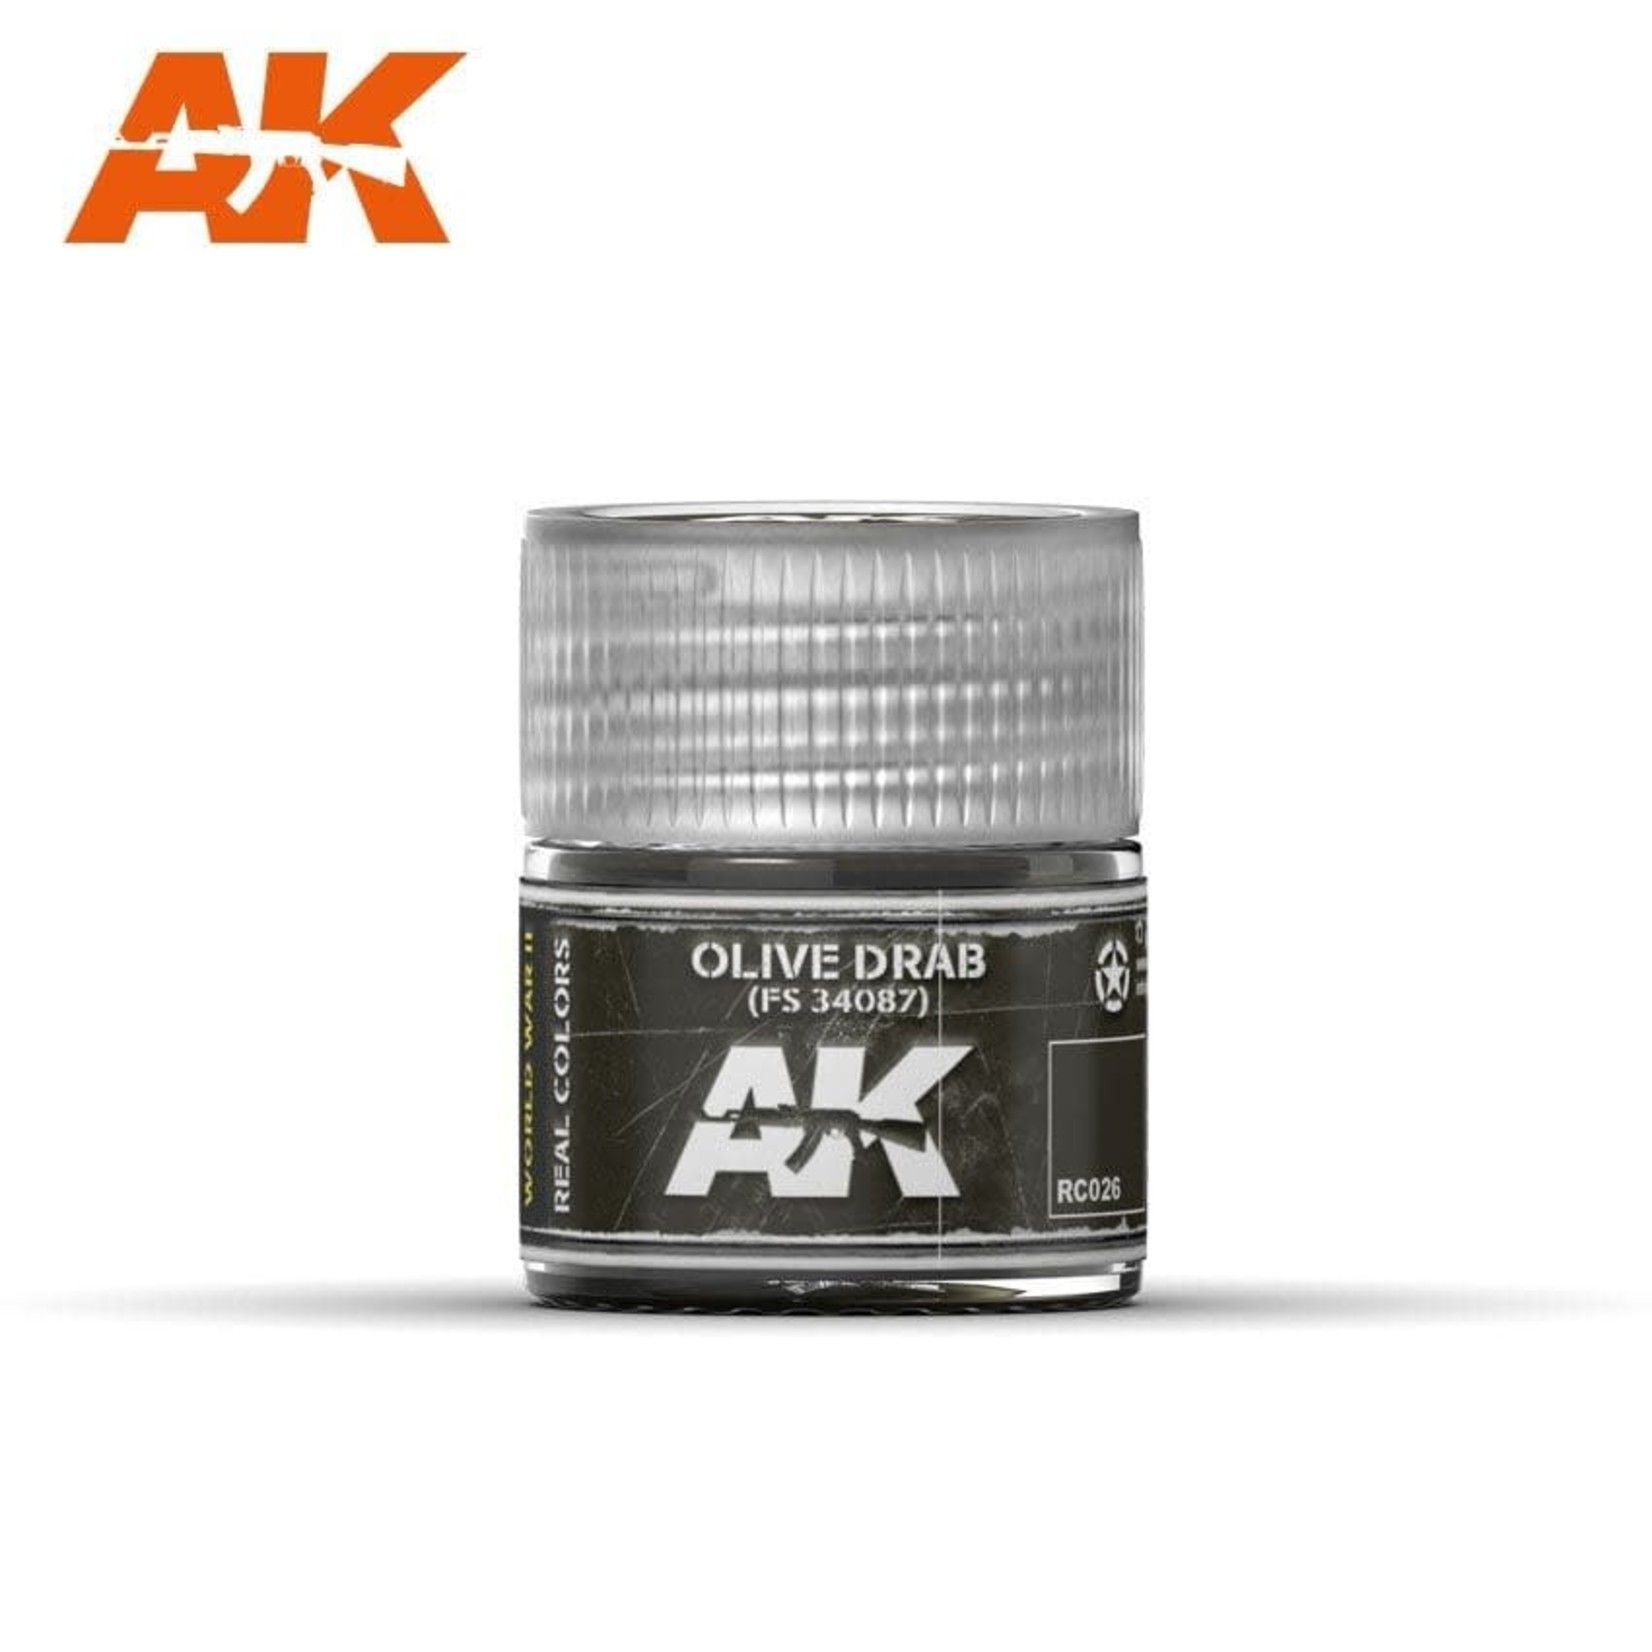 AK Interactive AK RC026 Real Colors Olive Drab FS 34087 10ml